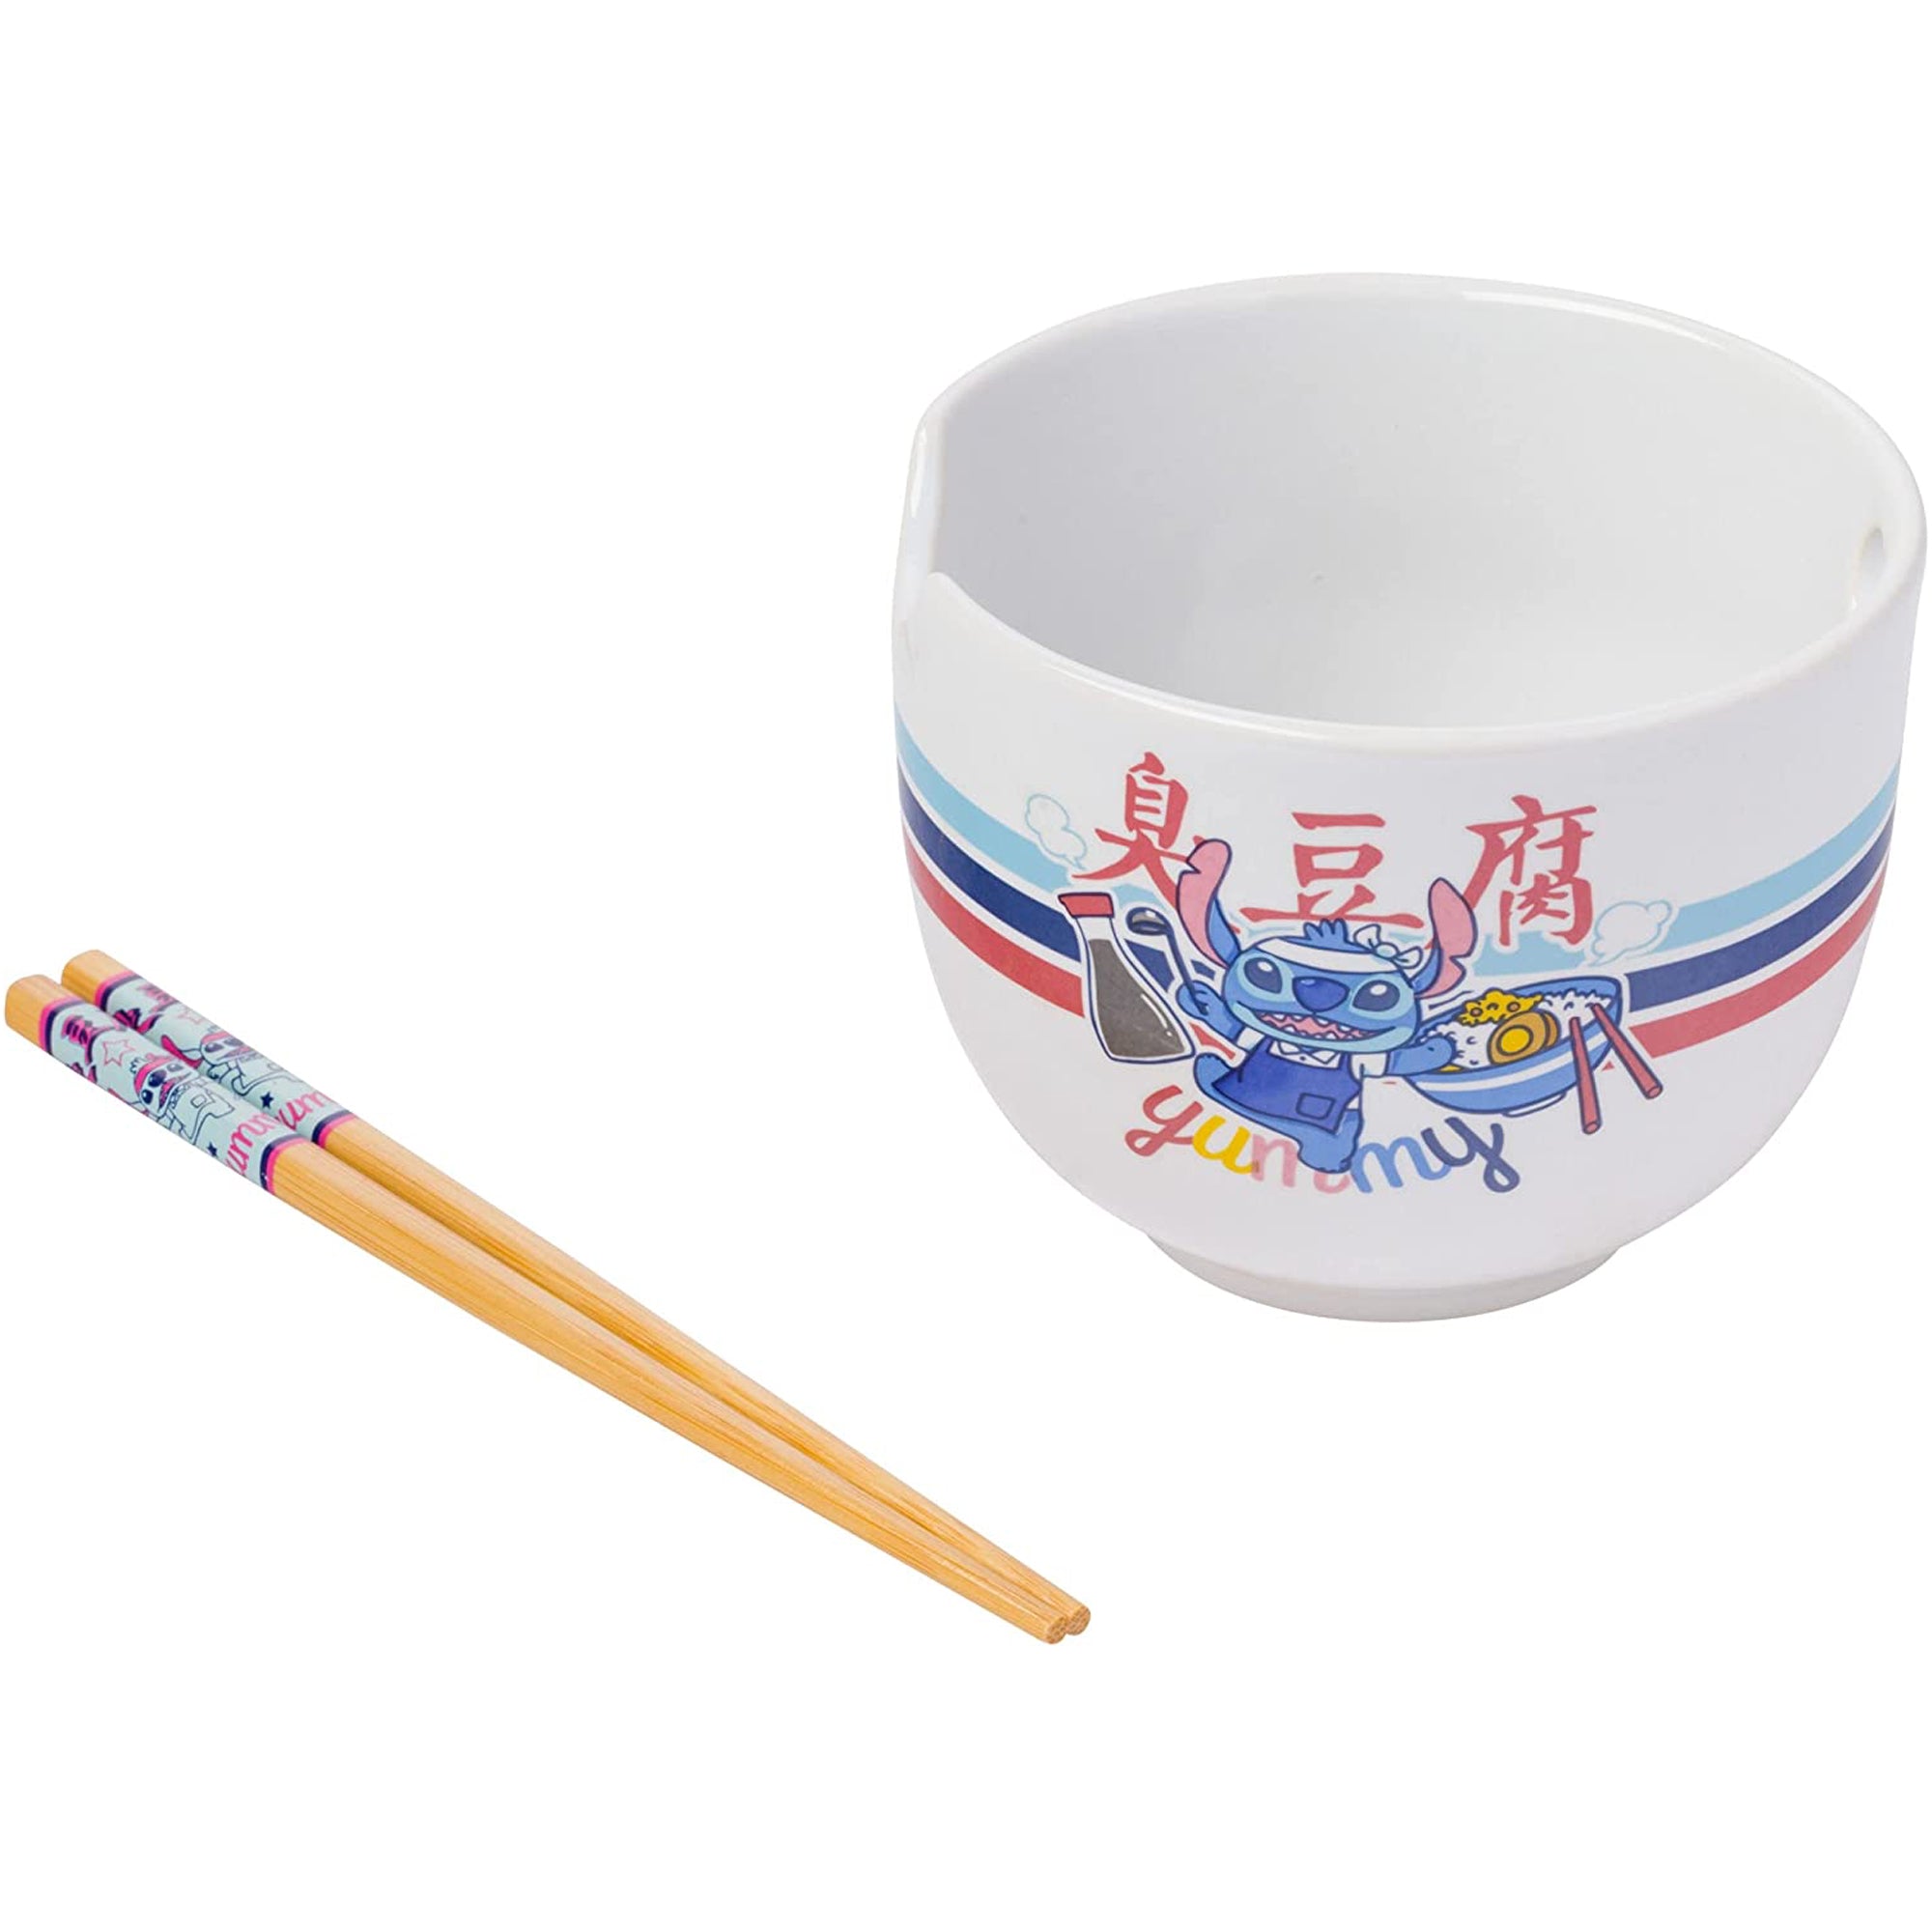 Disney Lilo and Stitch Stitch Ramen Bowl with Chopsticks